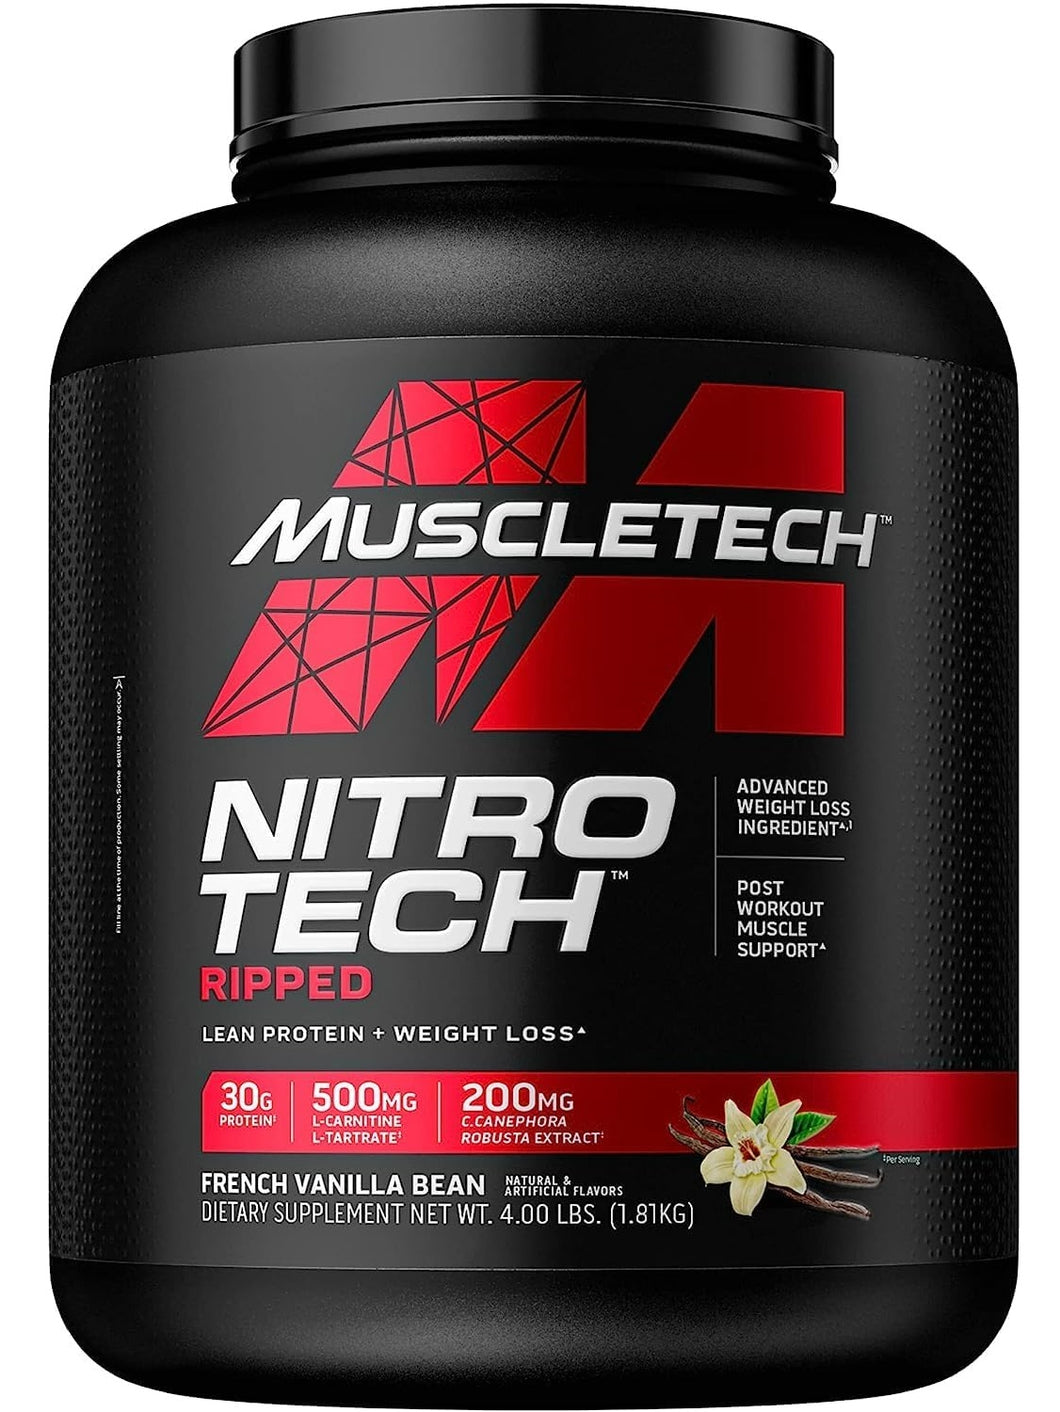 Proteína para perder peso y ganar definición muscular. NitroTech Ripped. Muscletech. Proteína + L-Carnitina. 4 Libras